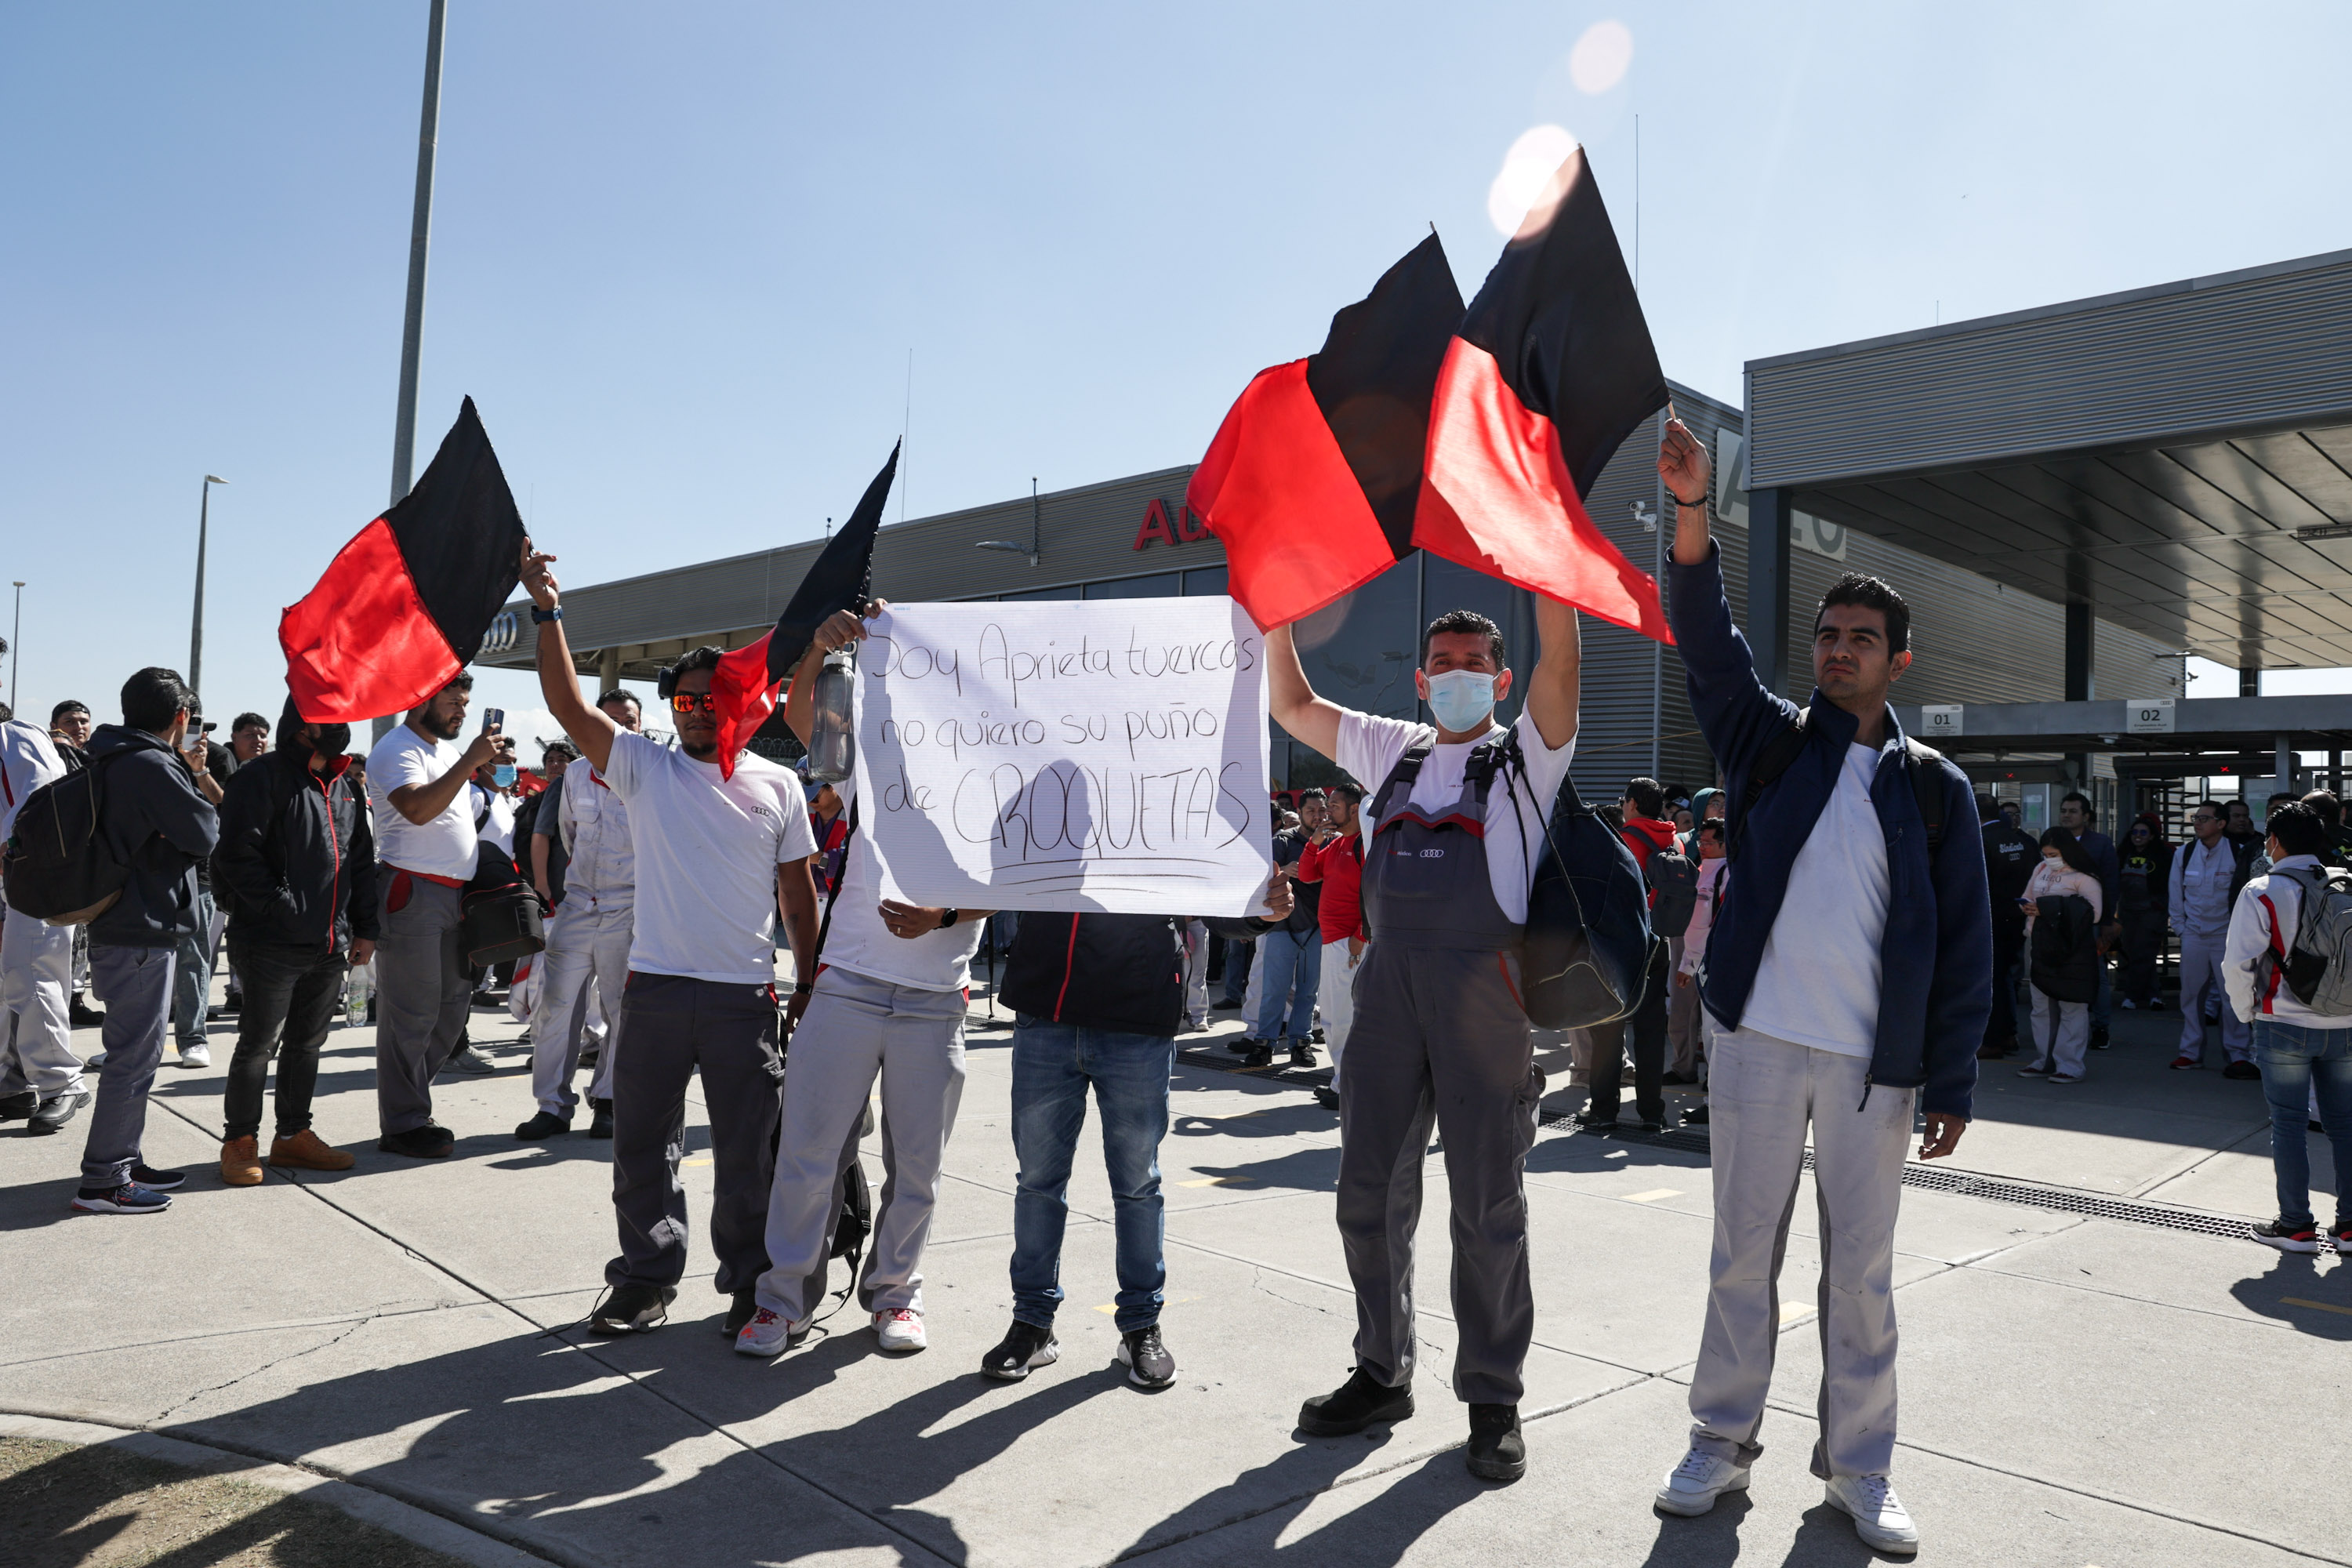 Huelga en AUDI: desacuerdo por aumento salarial cumple 20 días